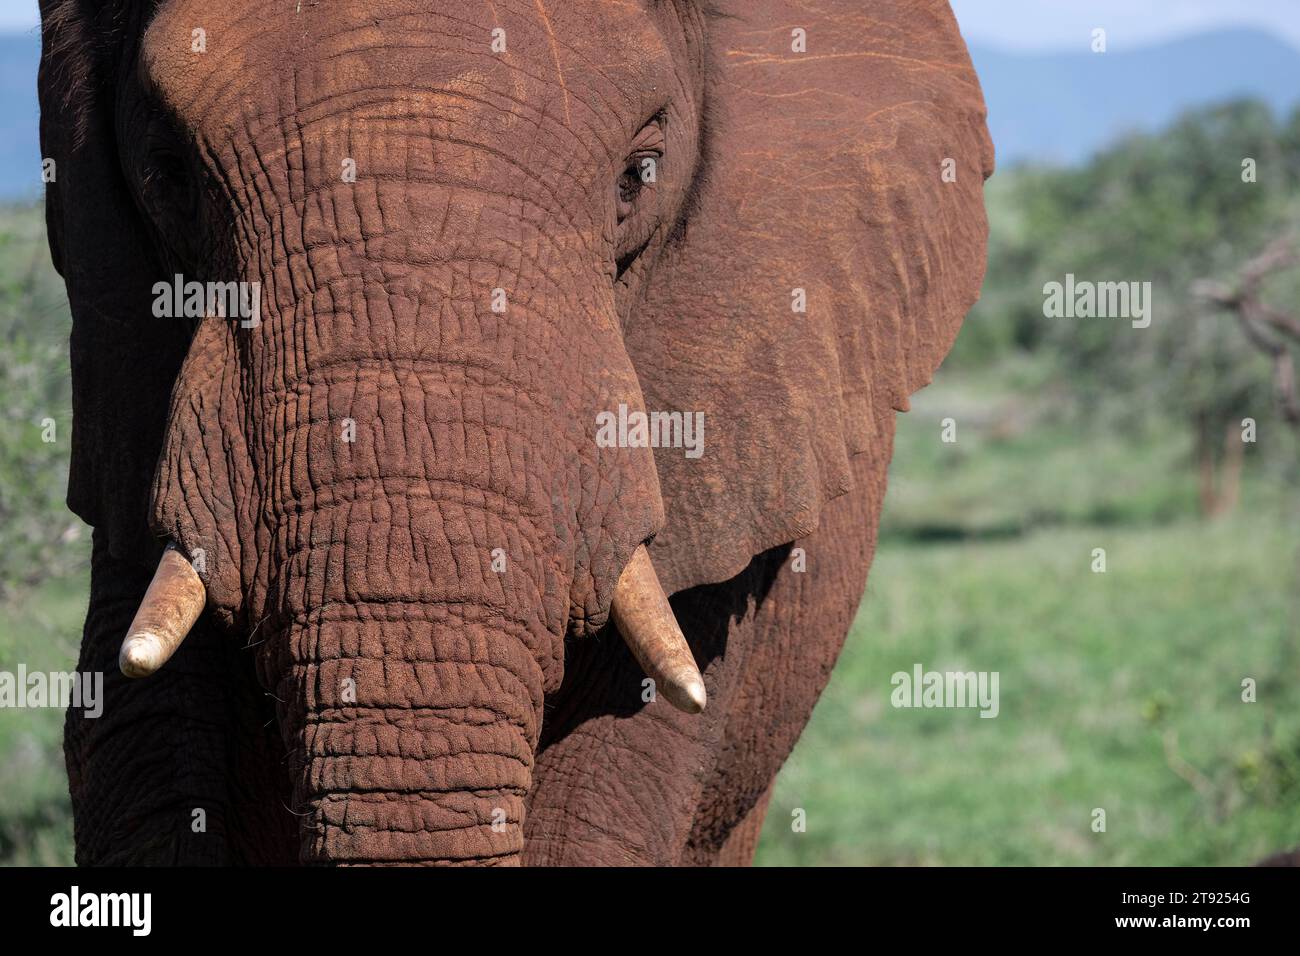 African elephant (Loxodonta africana), Zimanga private game reserve, Elephant Park, KwaZulu-Natal, South Africa Stock Photo